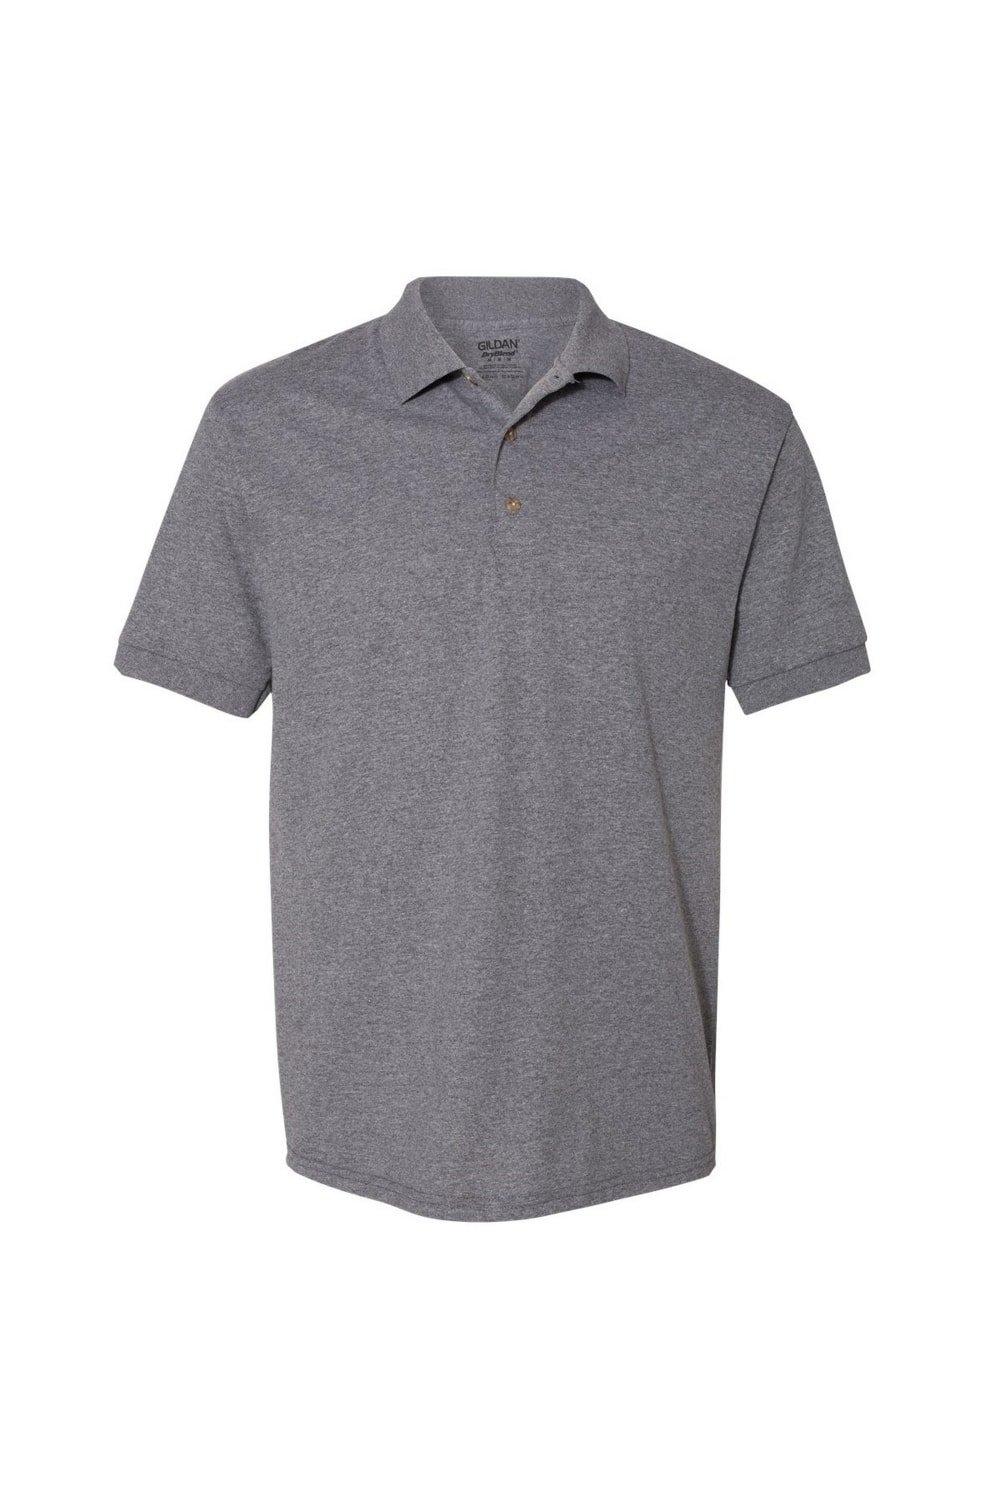 Рубашка поло из джерси DryBlend для взрослых с короткими рукавами Gildan, серый